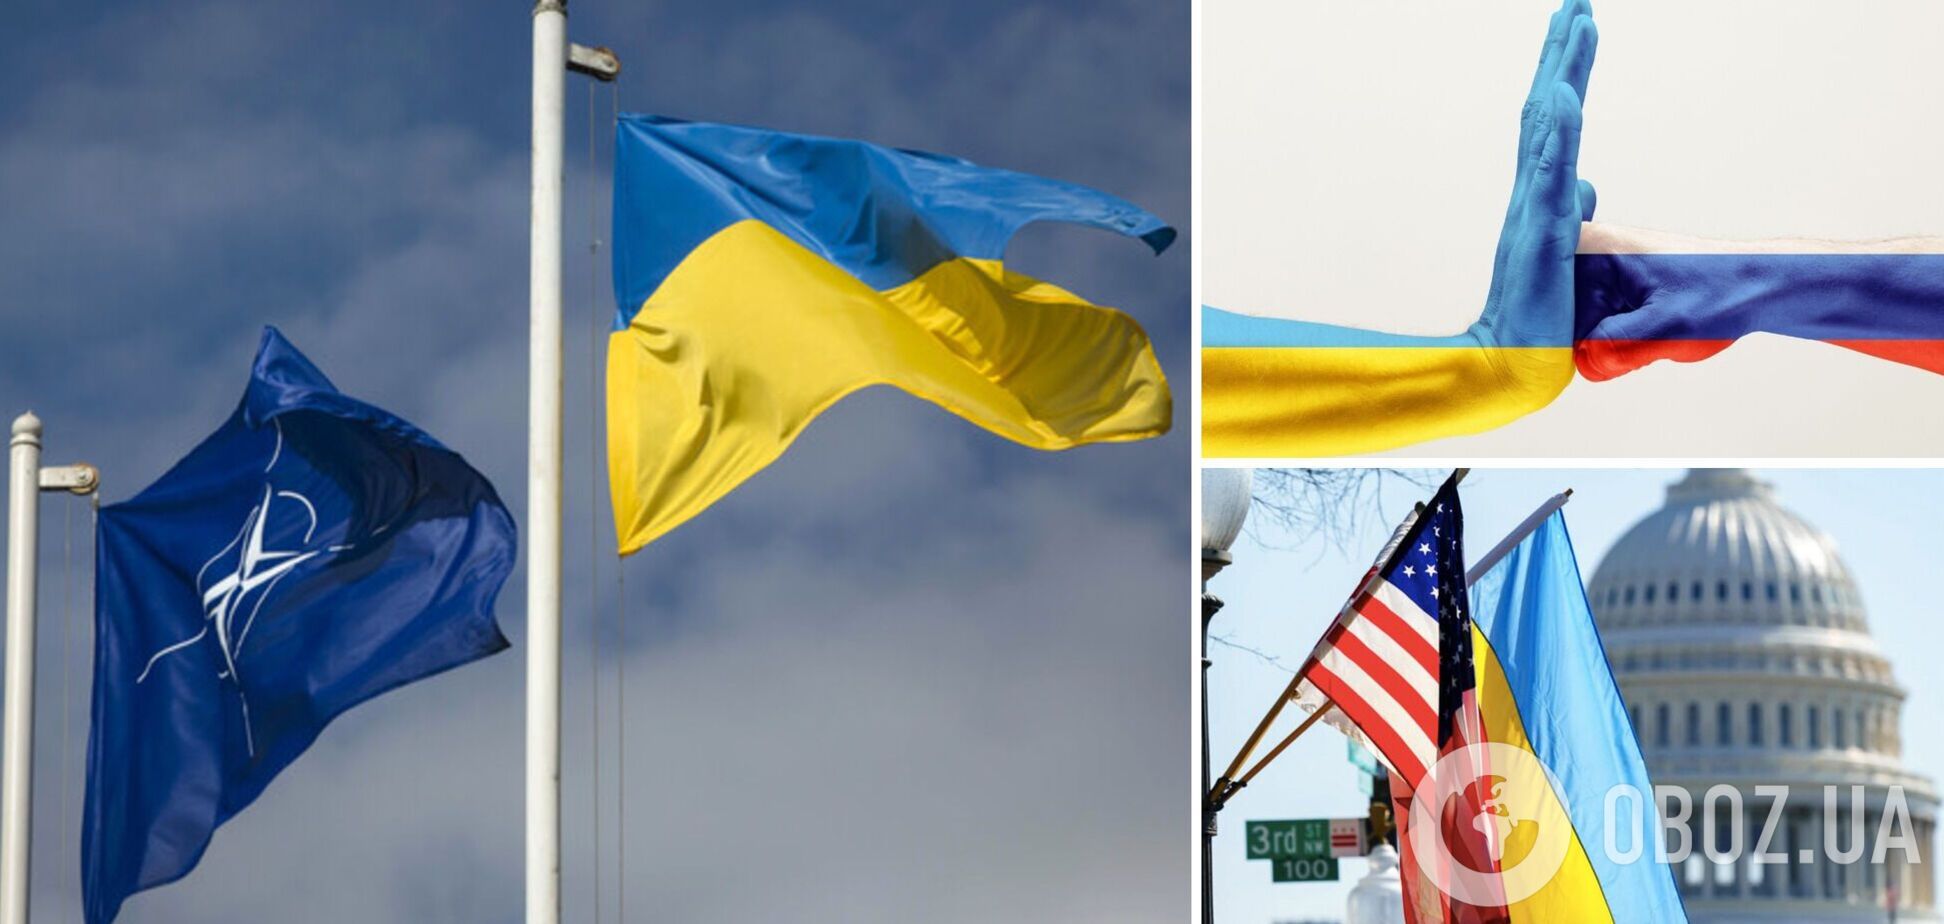 Гудыменко призвал диаспору помочь с ускорением предоставления западной поддержки Украине